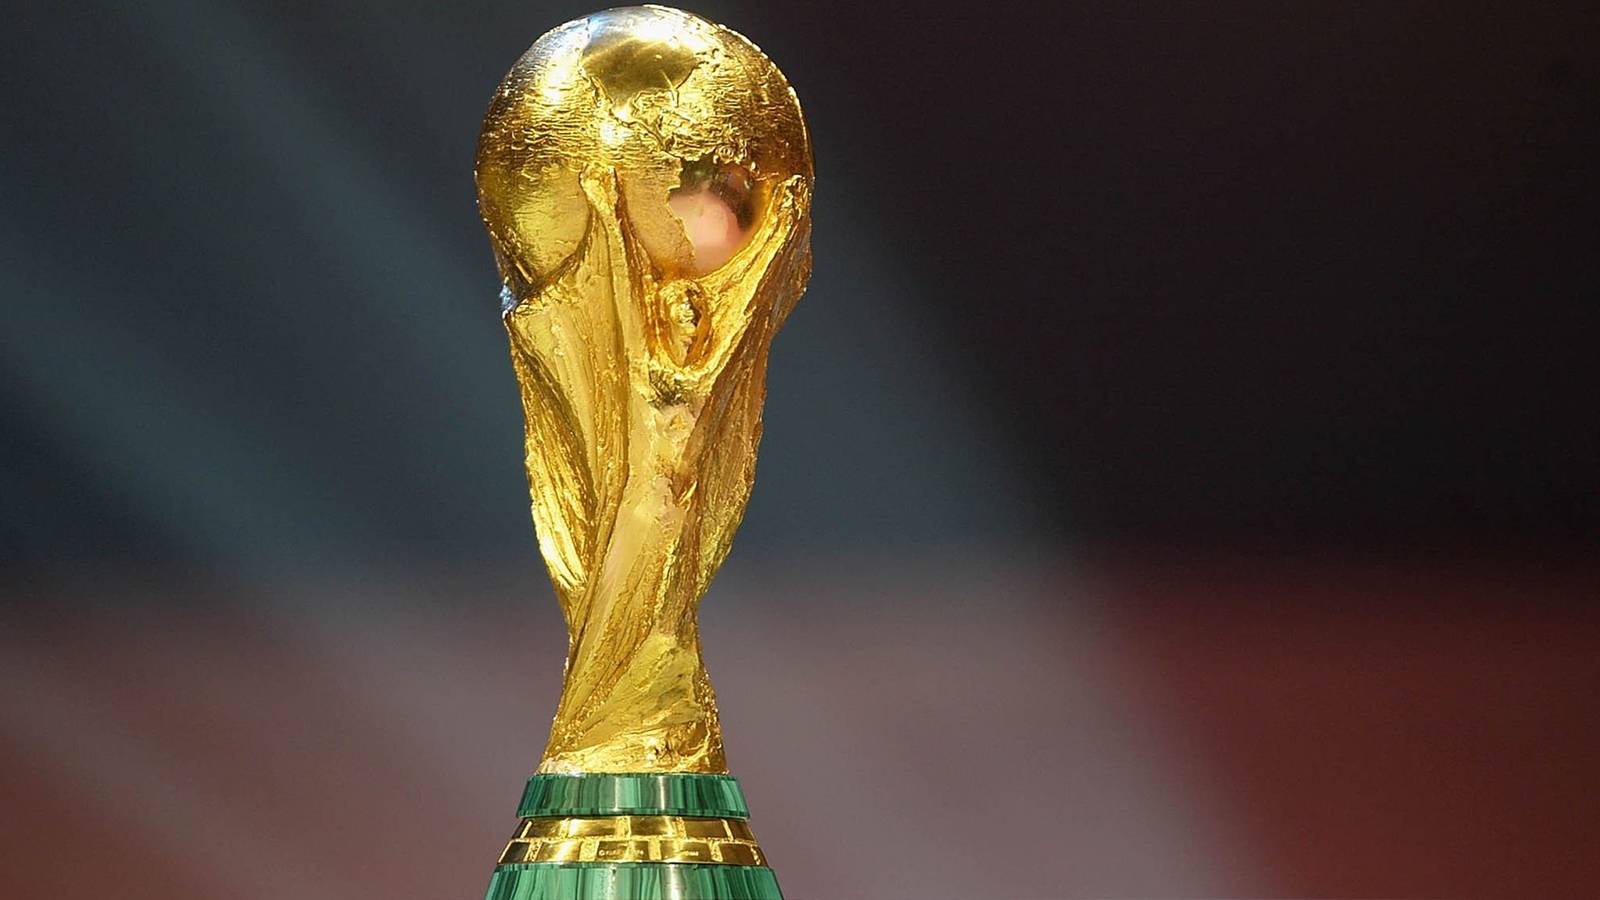 رسميًا | فيفا يعلن 16 مدينة مستضيفة لكأس العالم 2026